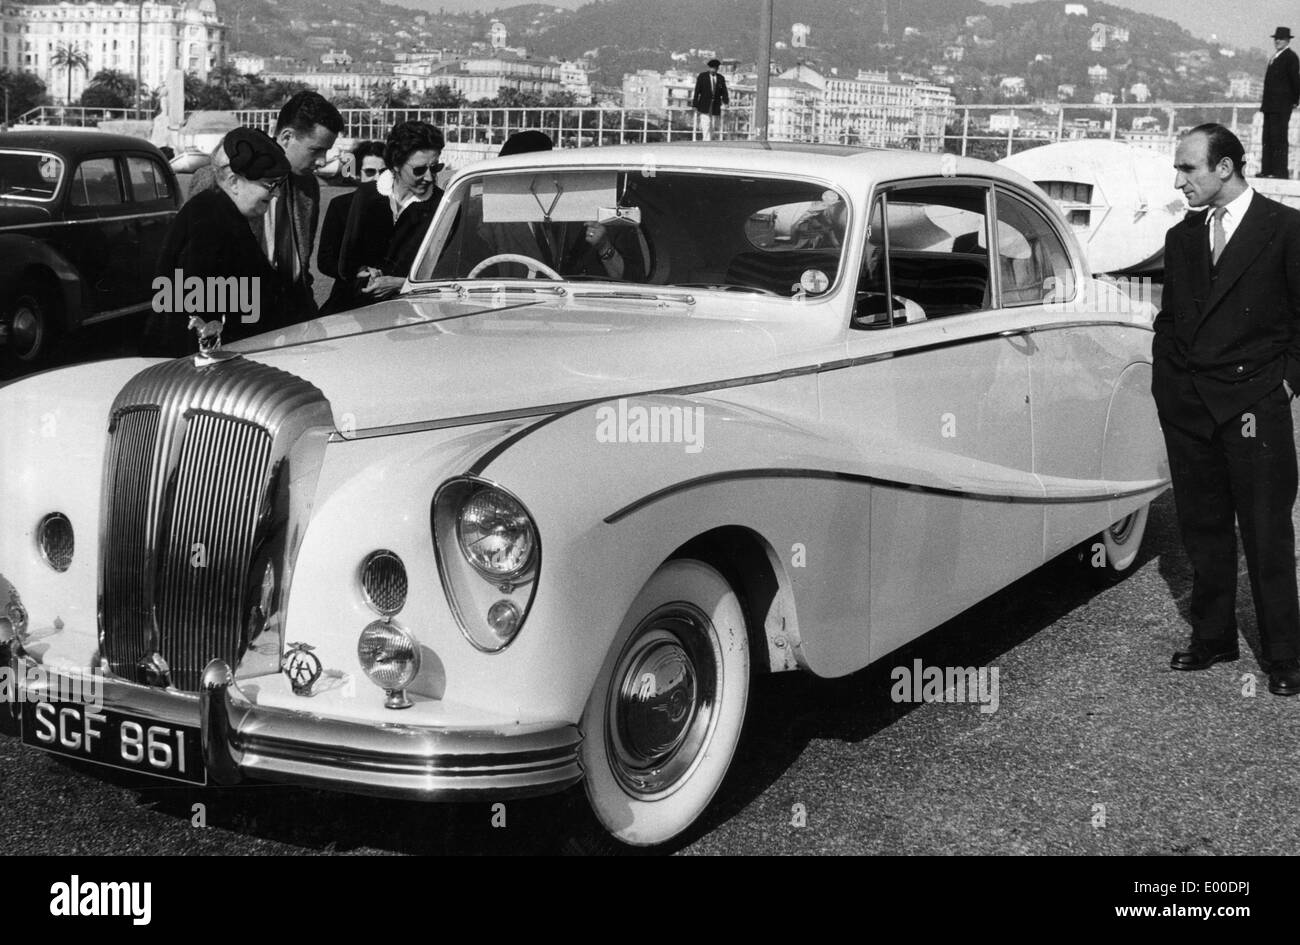 Daimler Limousine, 1955 Stock Photo